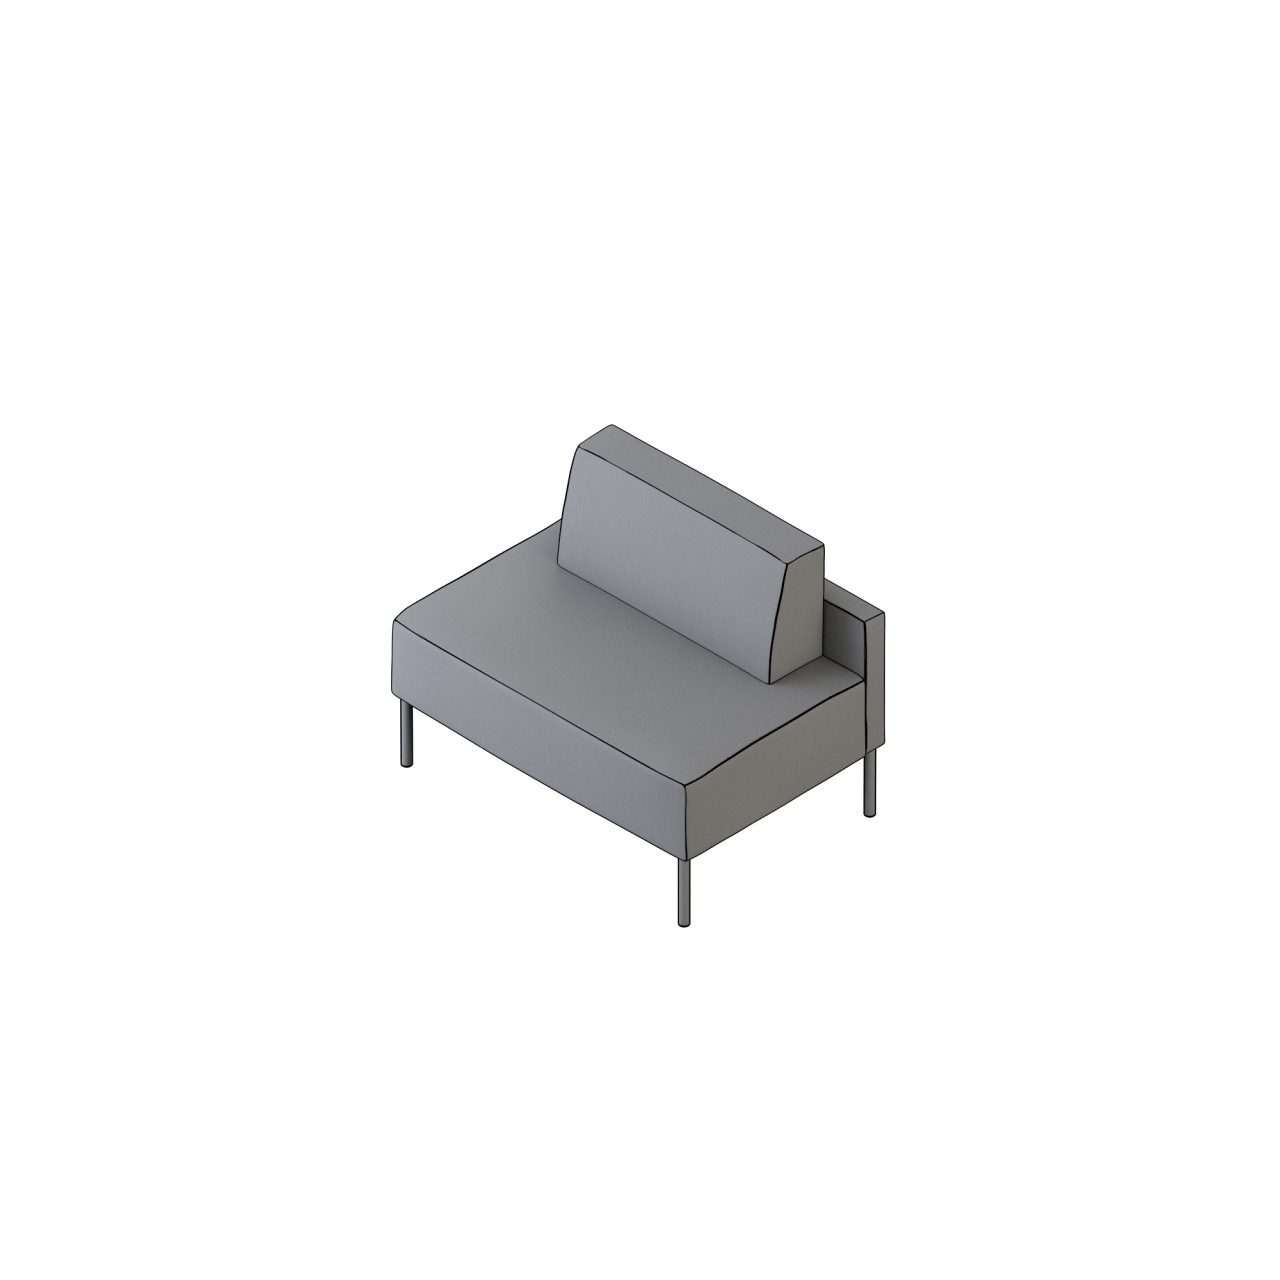 mozzo lounge/modular - 62014
COM 4.25 COL 85